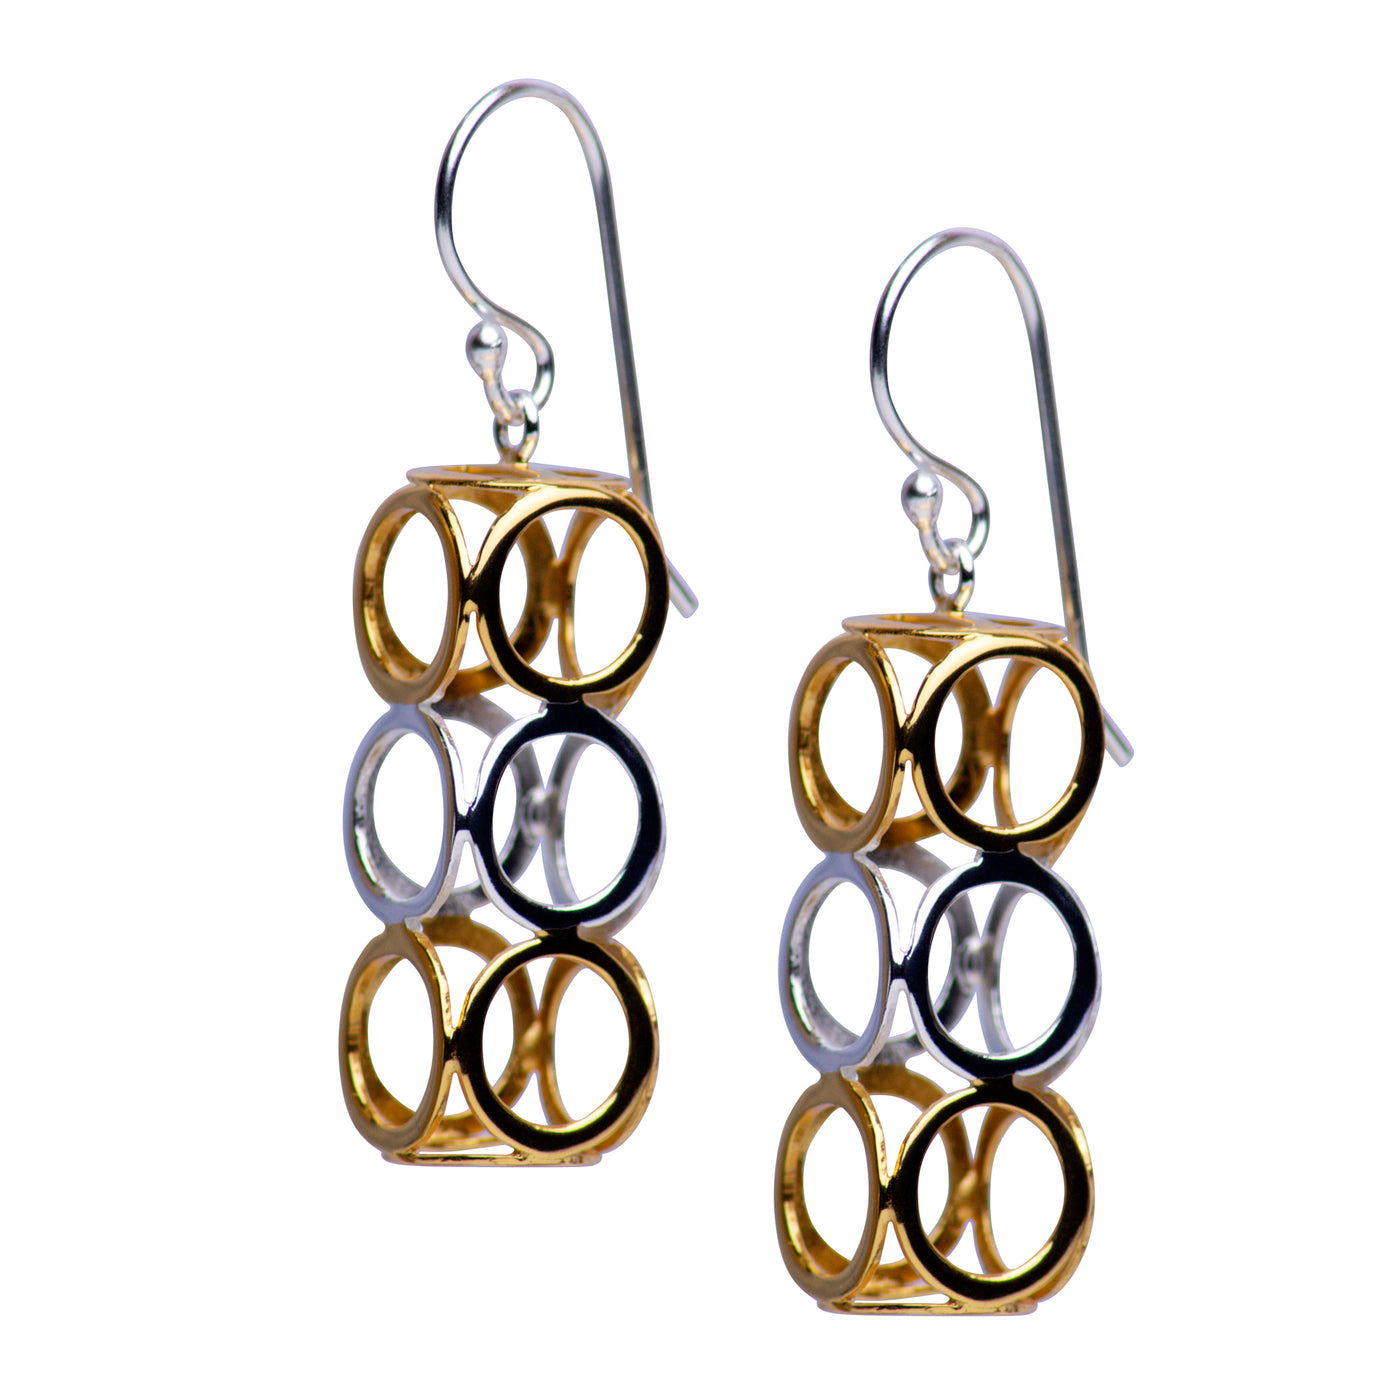 Geometric Dangle Earrings in Sterling Silver & Gold | SilverAndGold